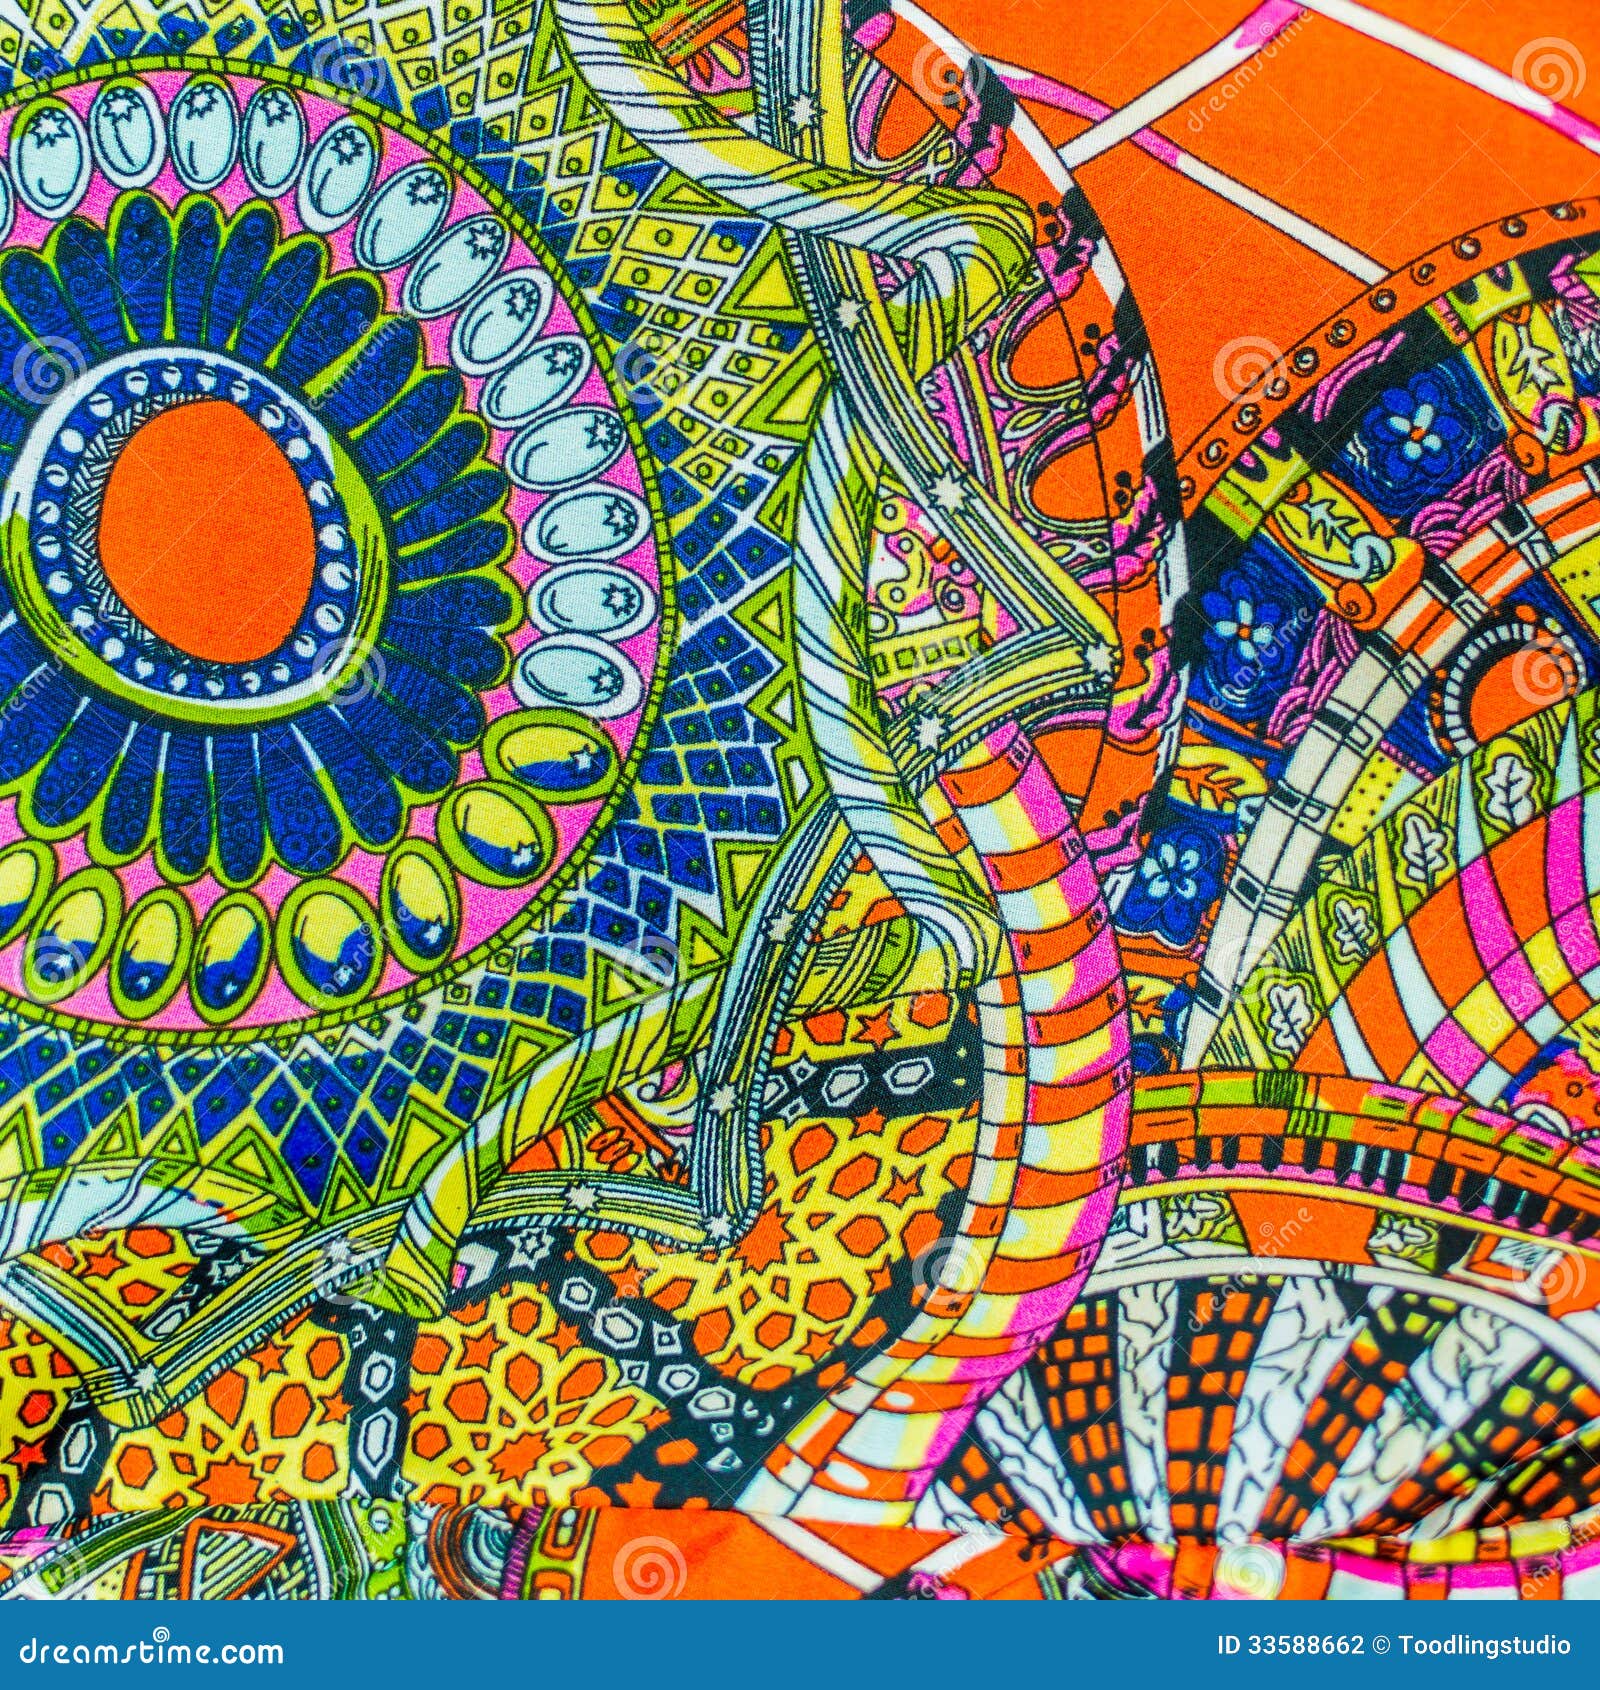 Pinturas Coloridas E Imaginativas. Para La Textura O El Diseño Web Del Arte Foto de archivo Imagen de wallpaper: 33588662